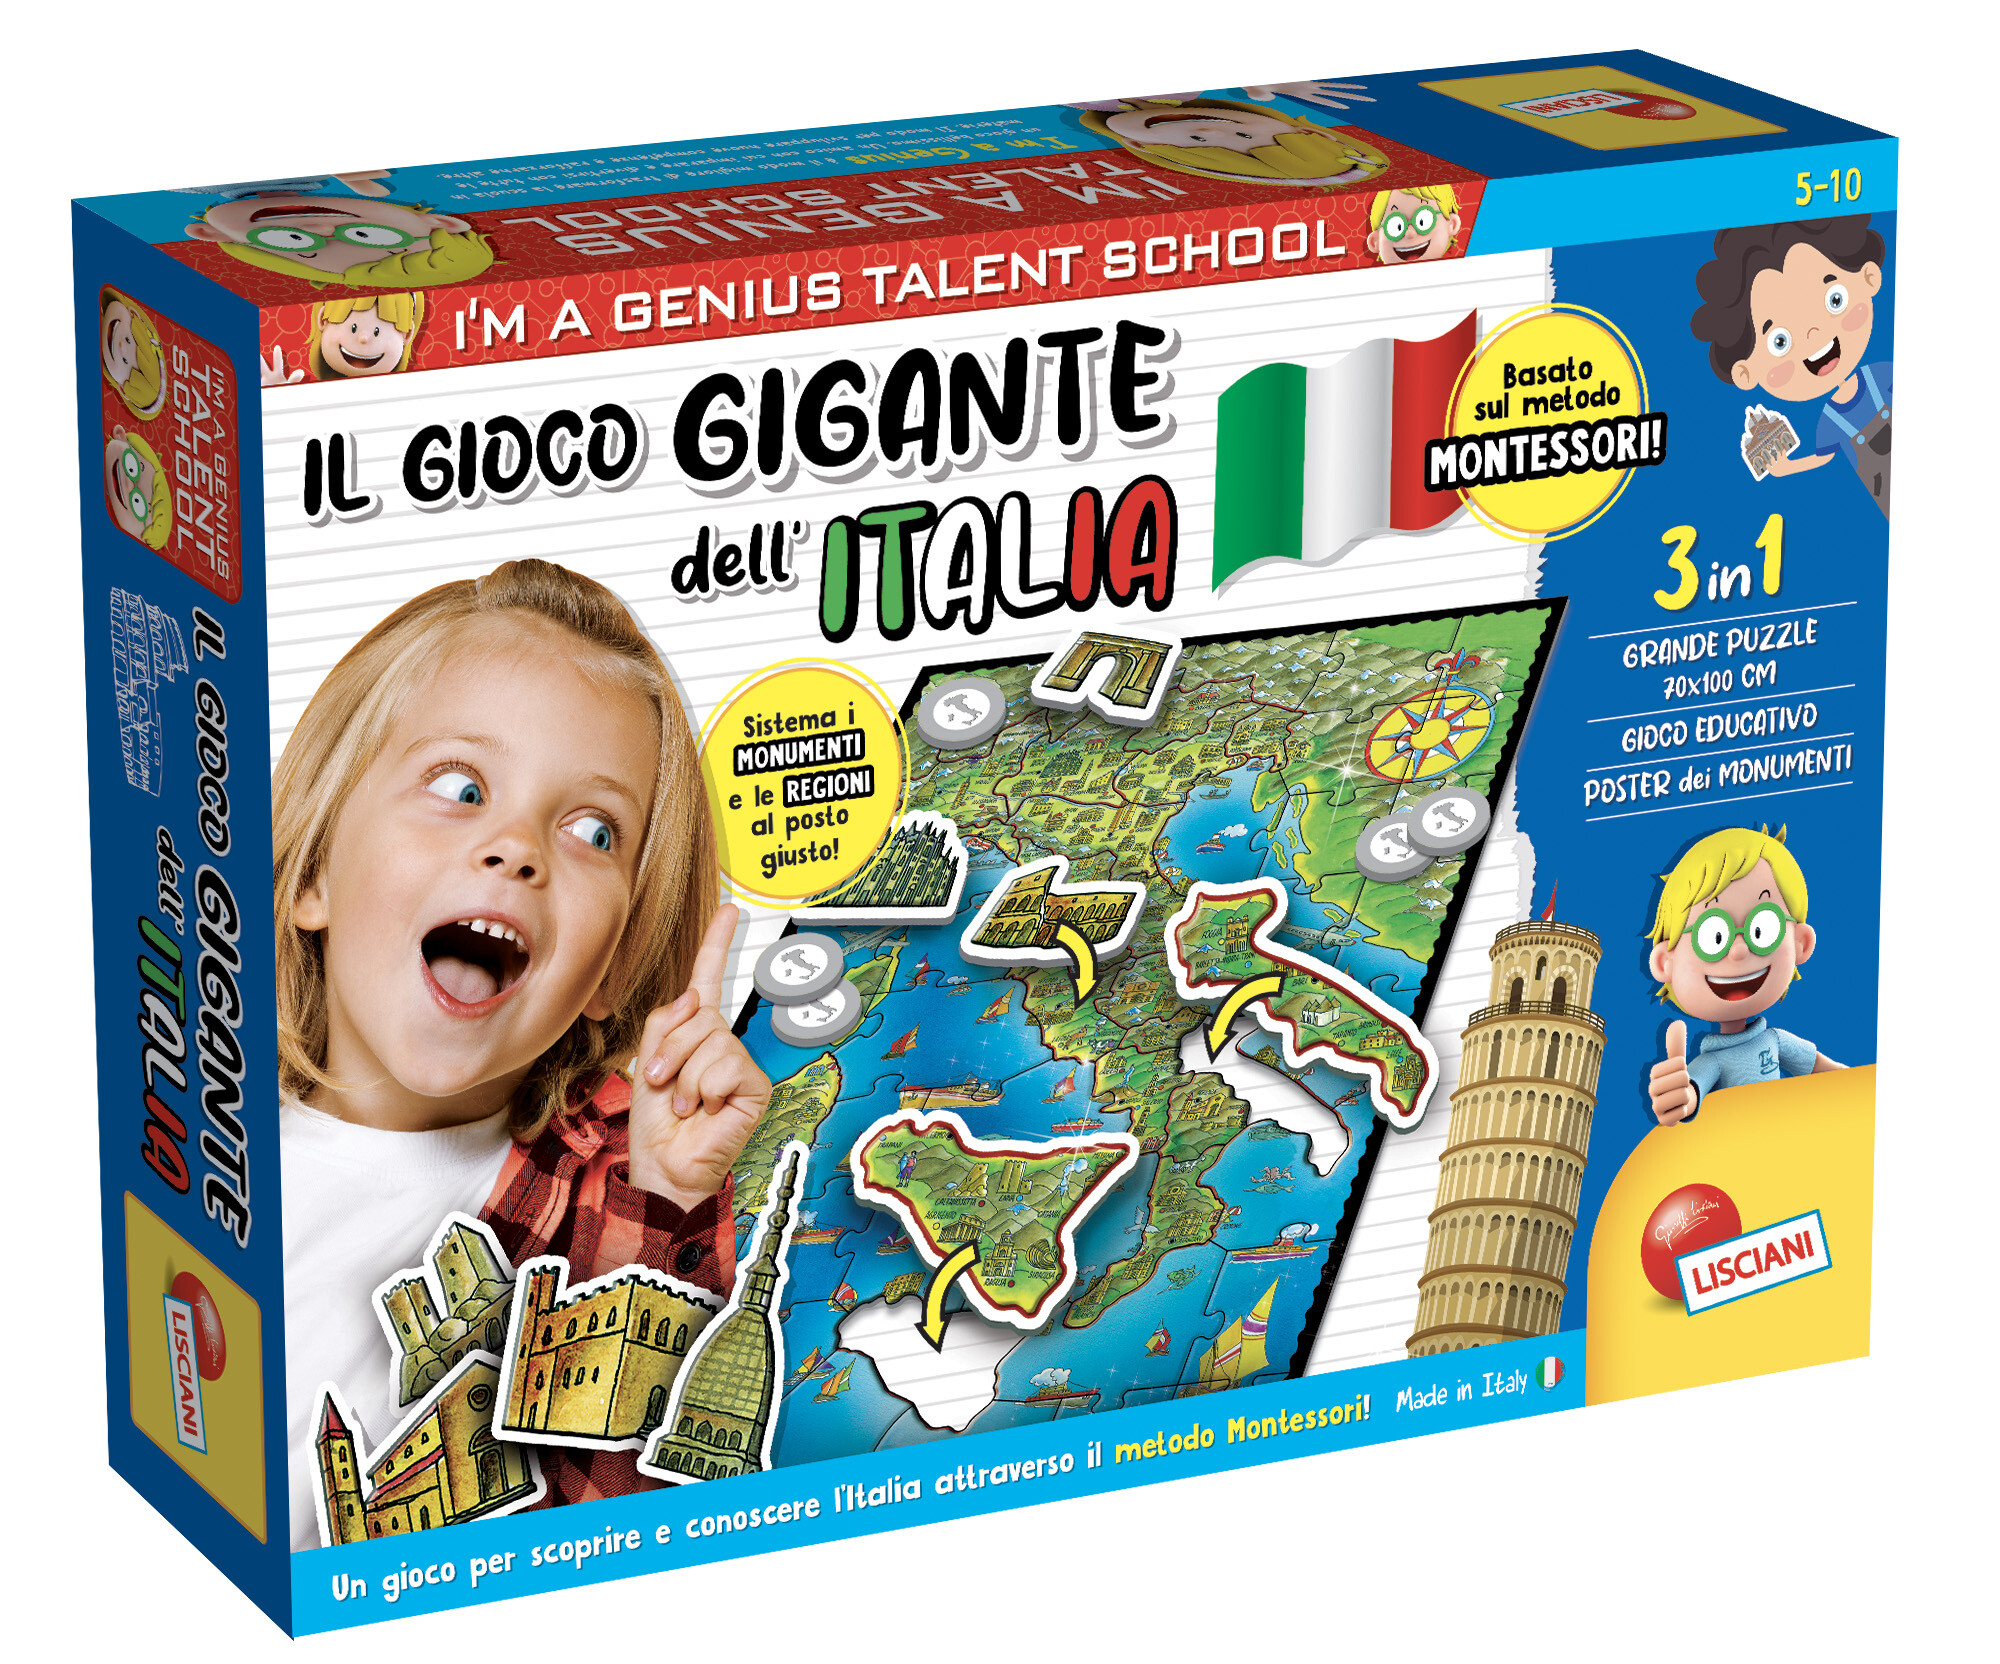 I'm a genius il gioco gigante dell'italia montessori - Toys Center